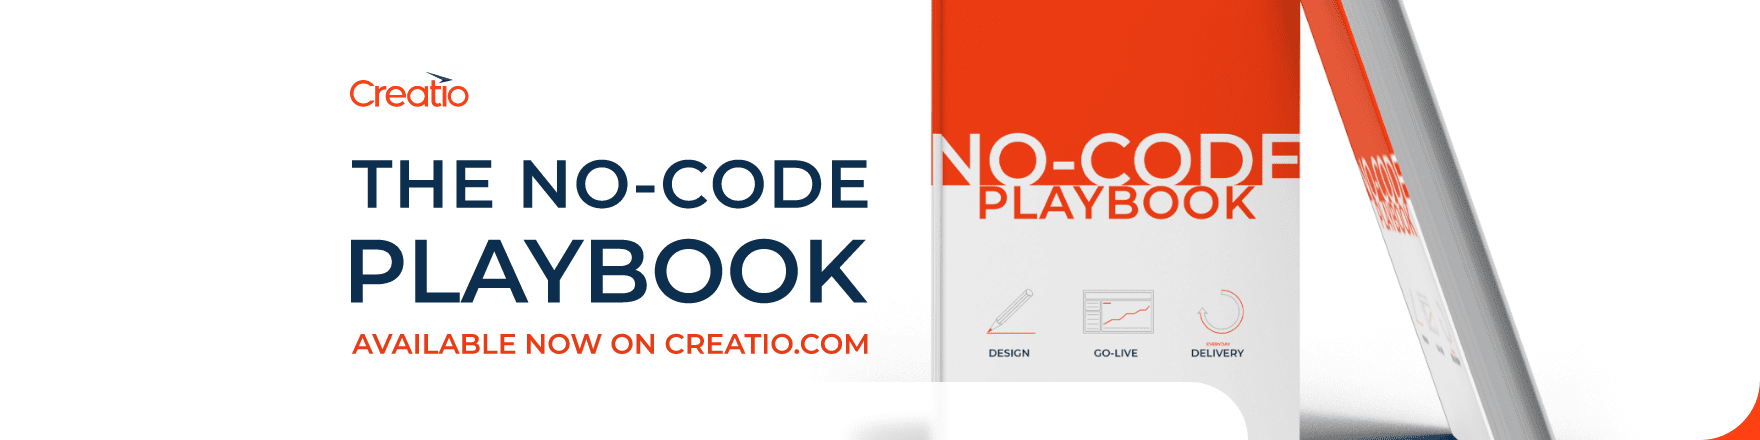 No-code Playbook Creatio